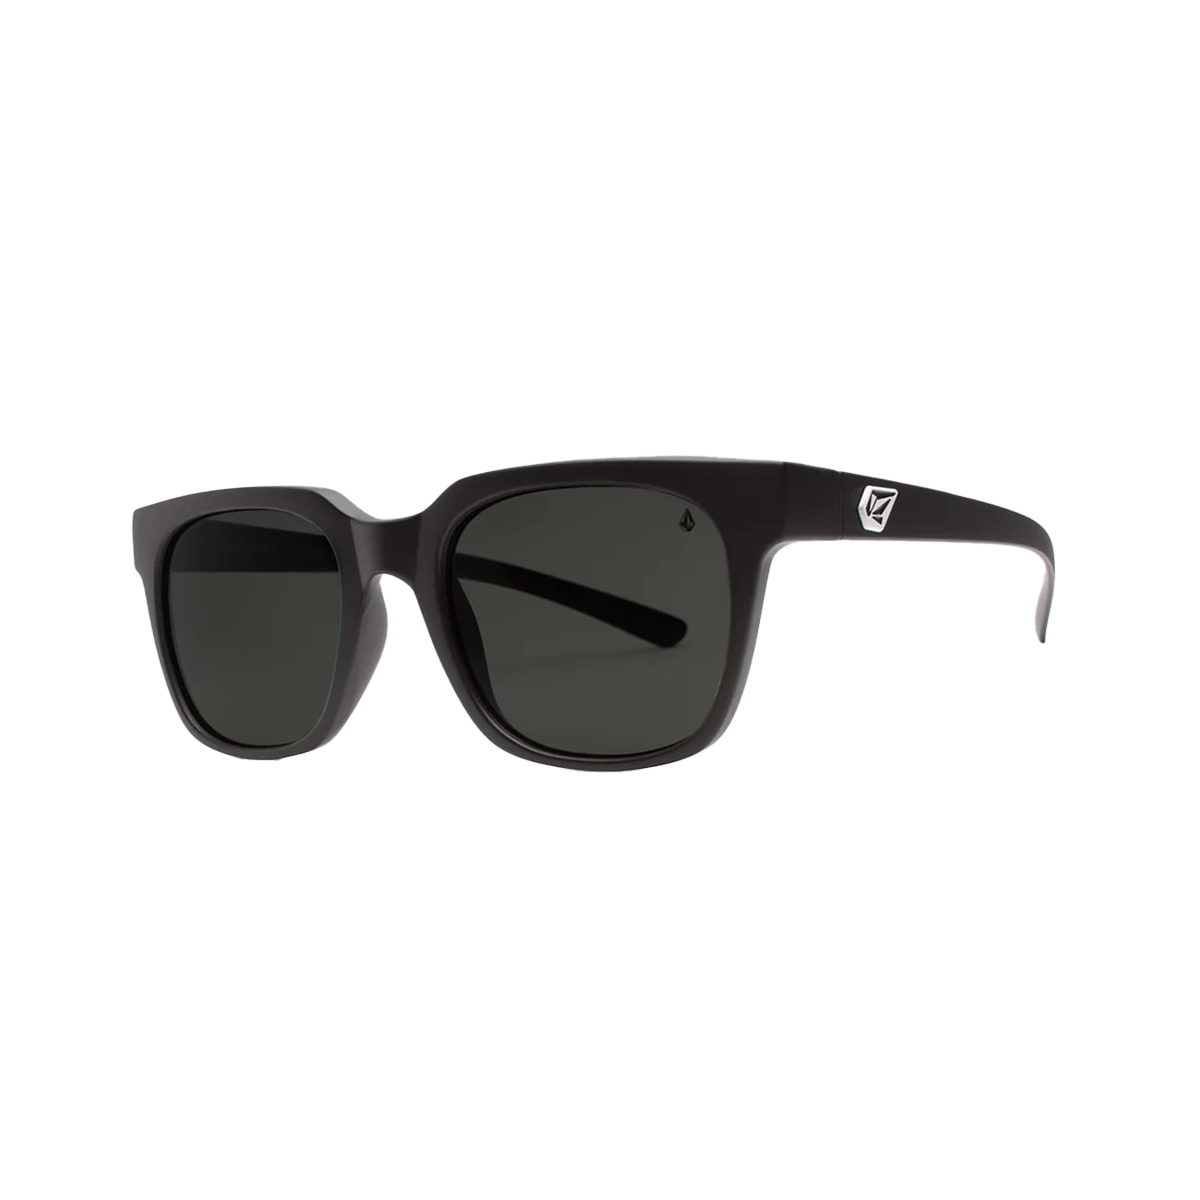 Volcom Morph Sunglasses - Matte Black/ Gray Polar